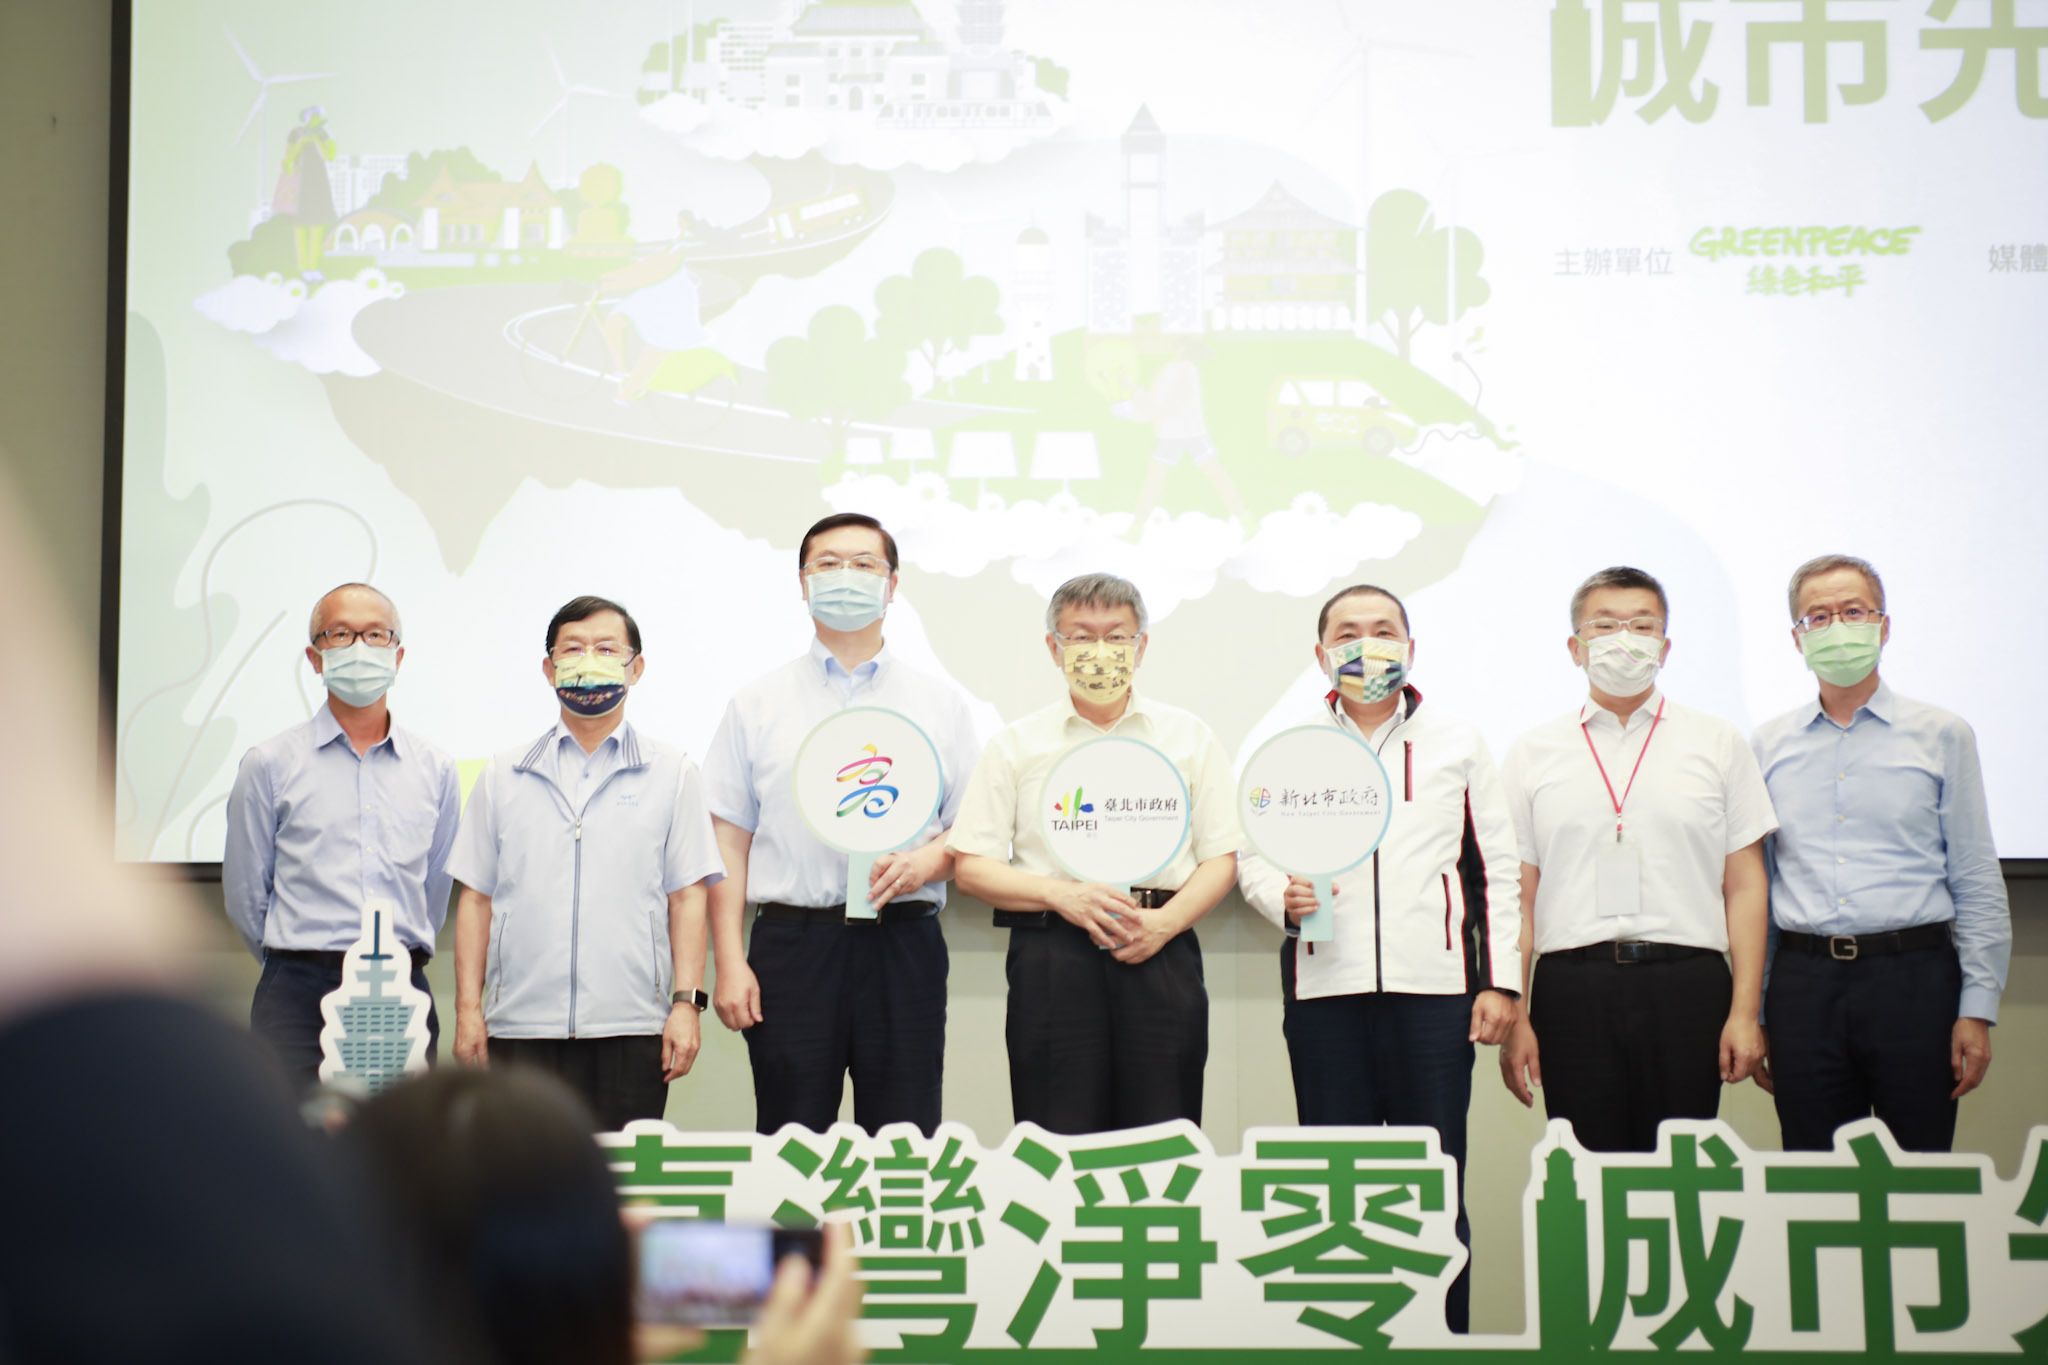 綠色和平臺北辦公室於2021年10月13日舉辦「臺灣城市淨零承諾」論壇暨記者會，邀請中央及地方代表共同面對氣候危機。